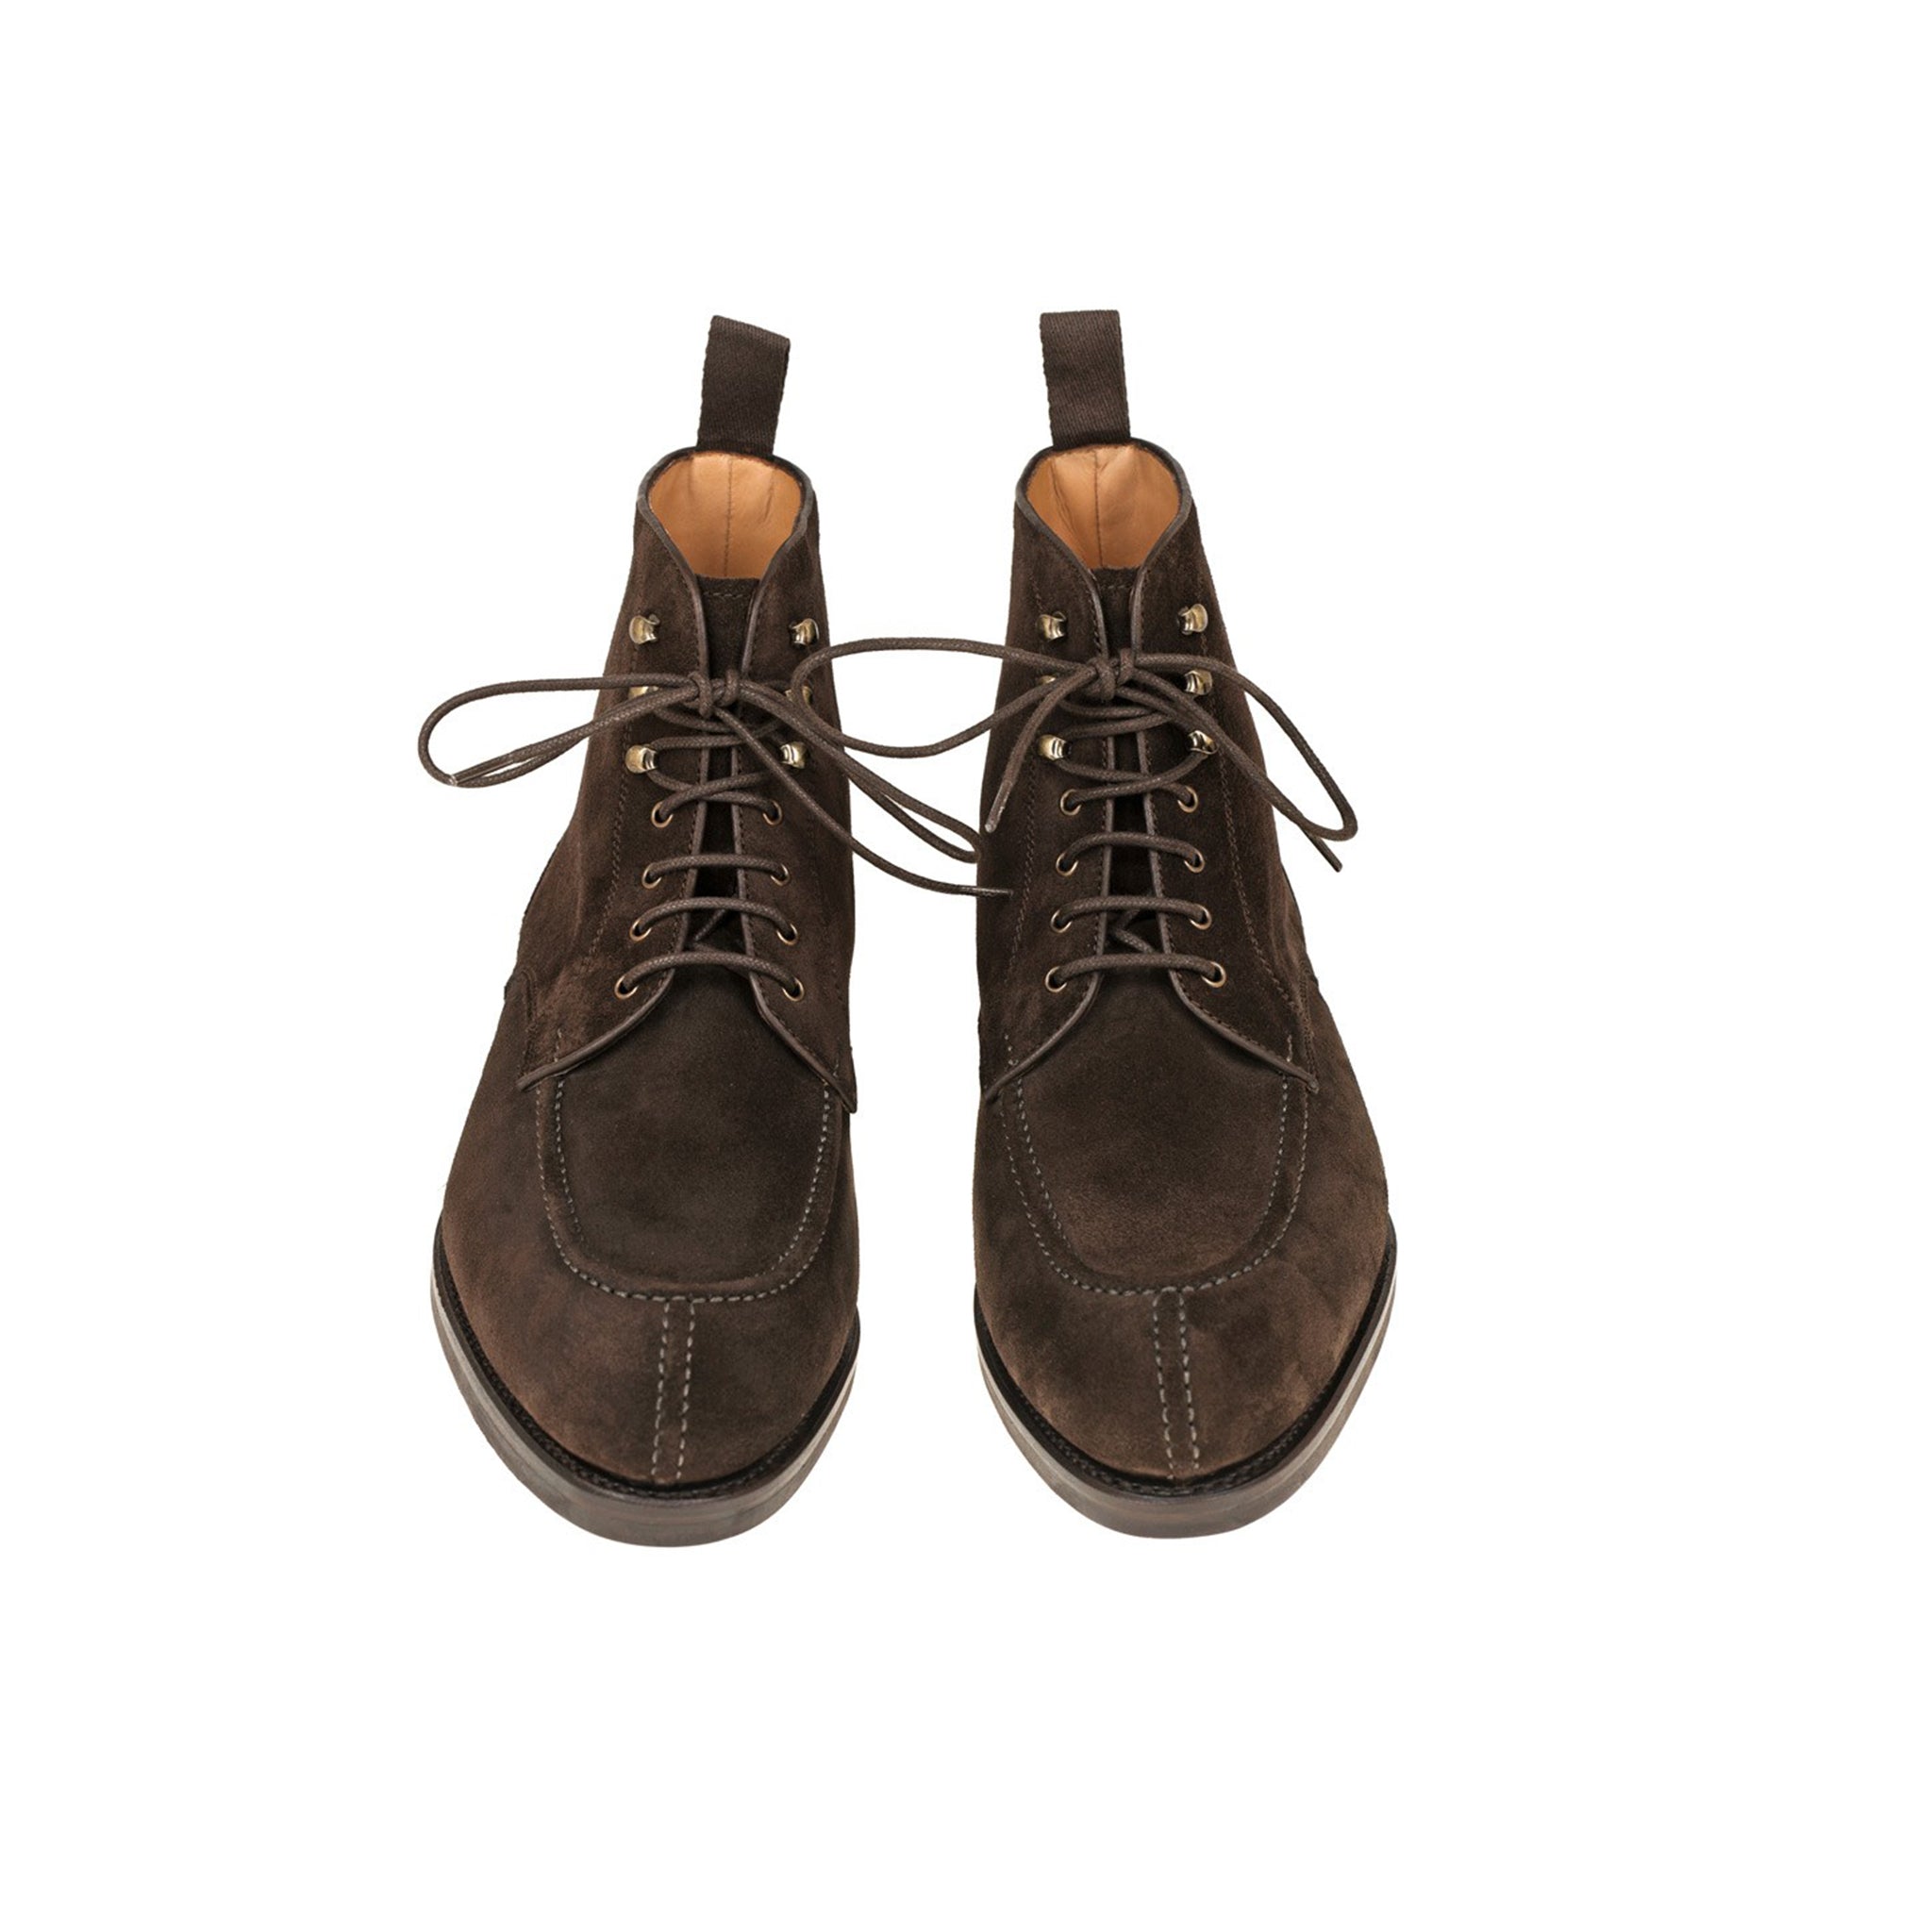 Cocoa Norwegian Men's Boots